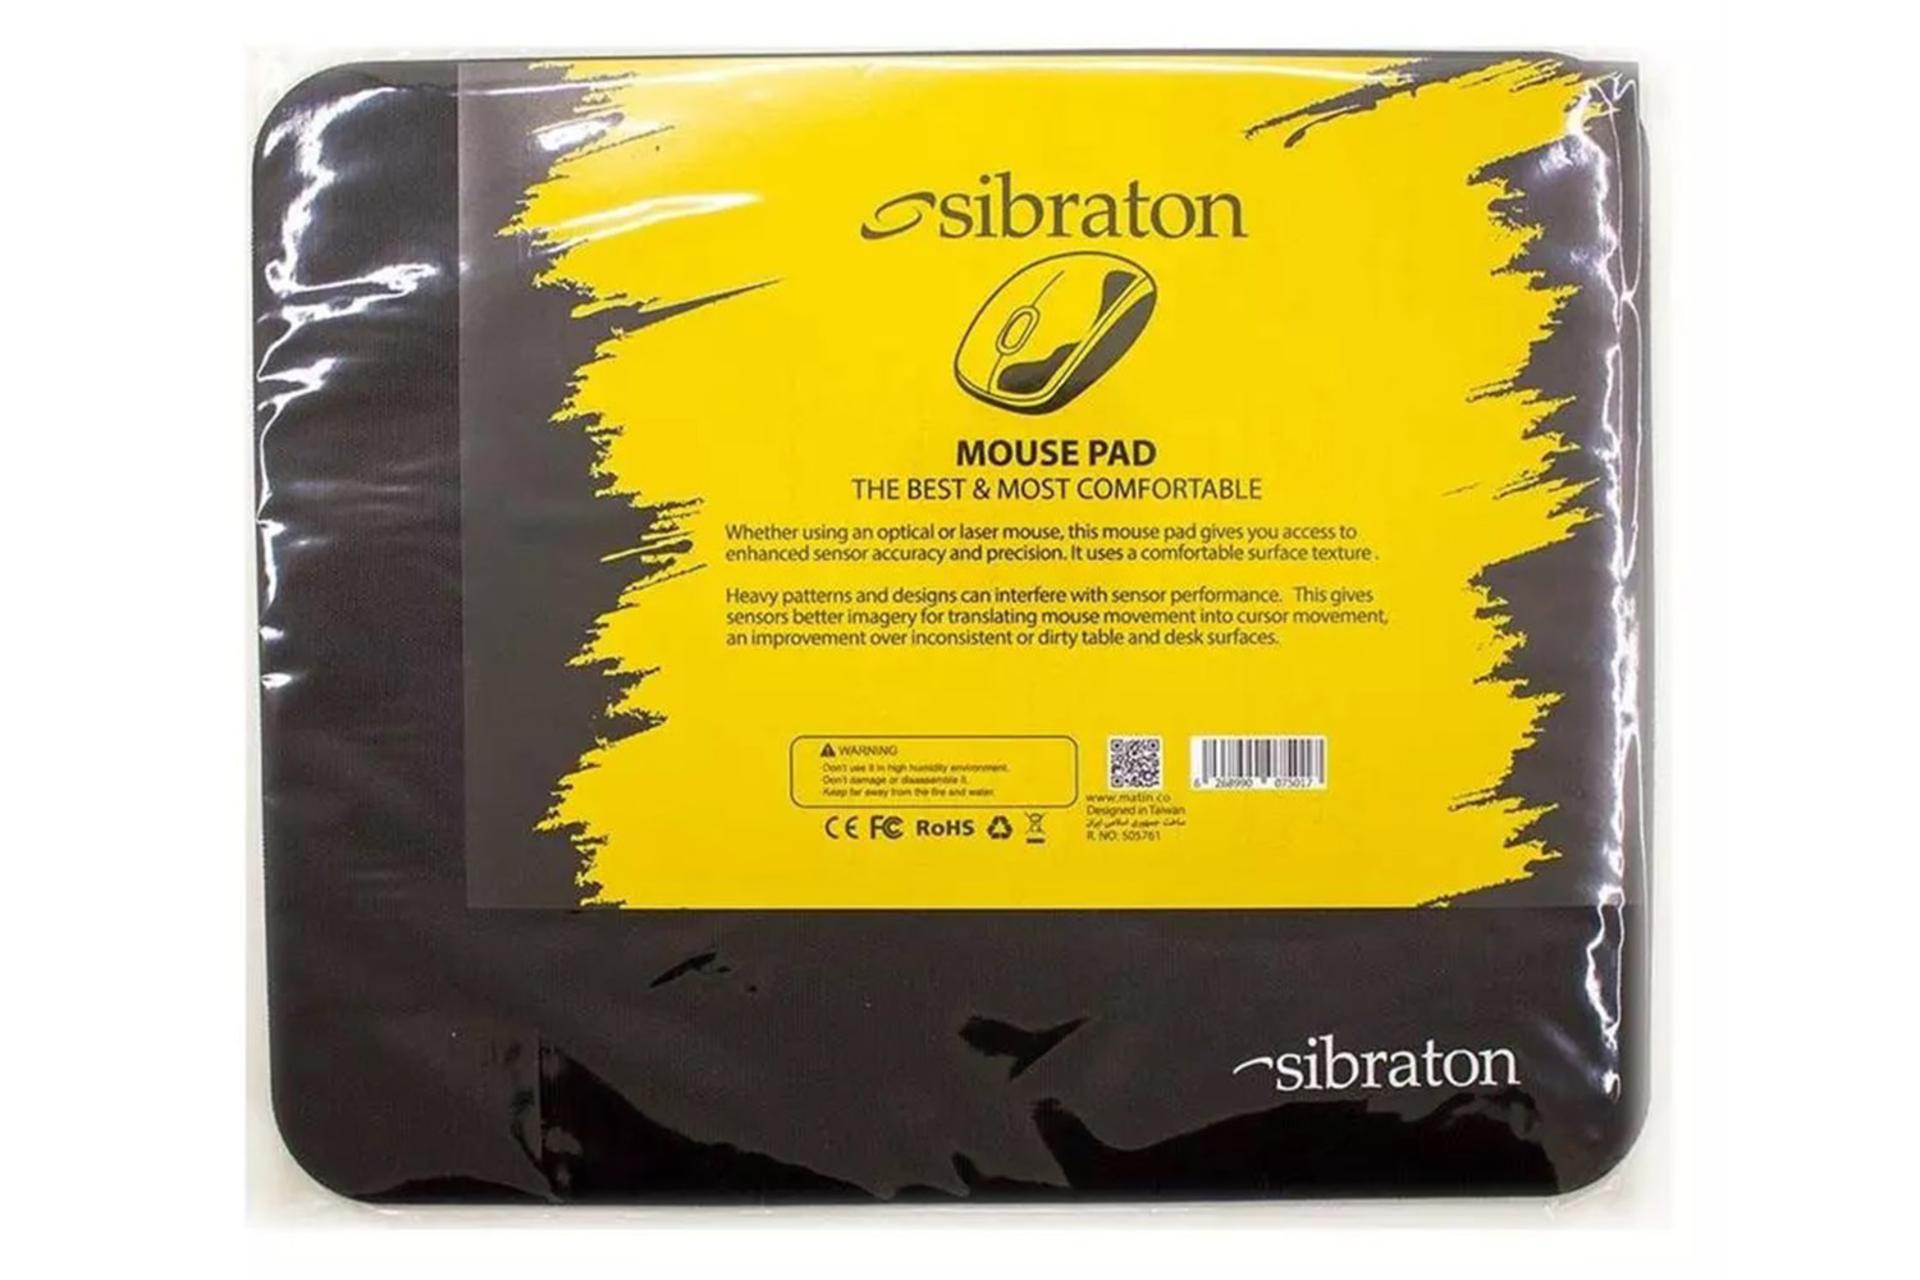 بسته بندی ماوس پد سیبراتون Sibraton SPM 151